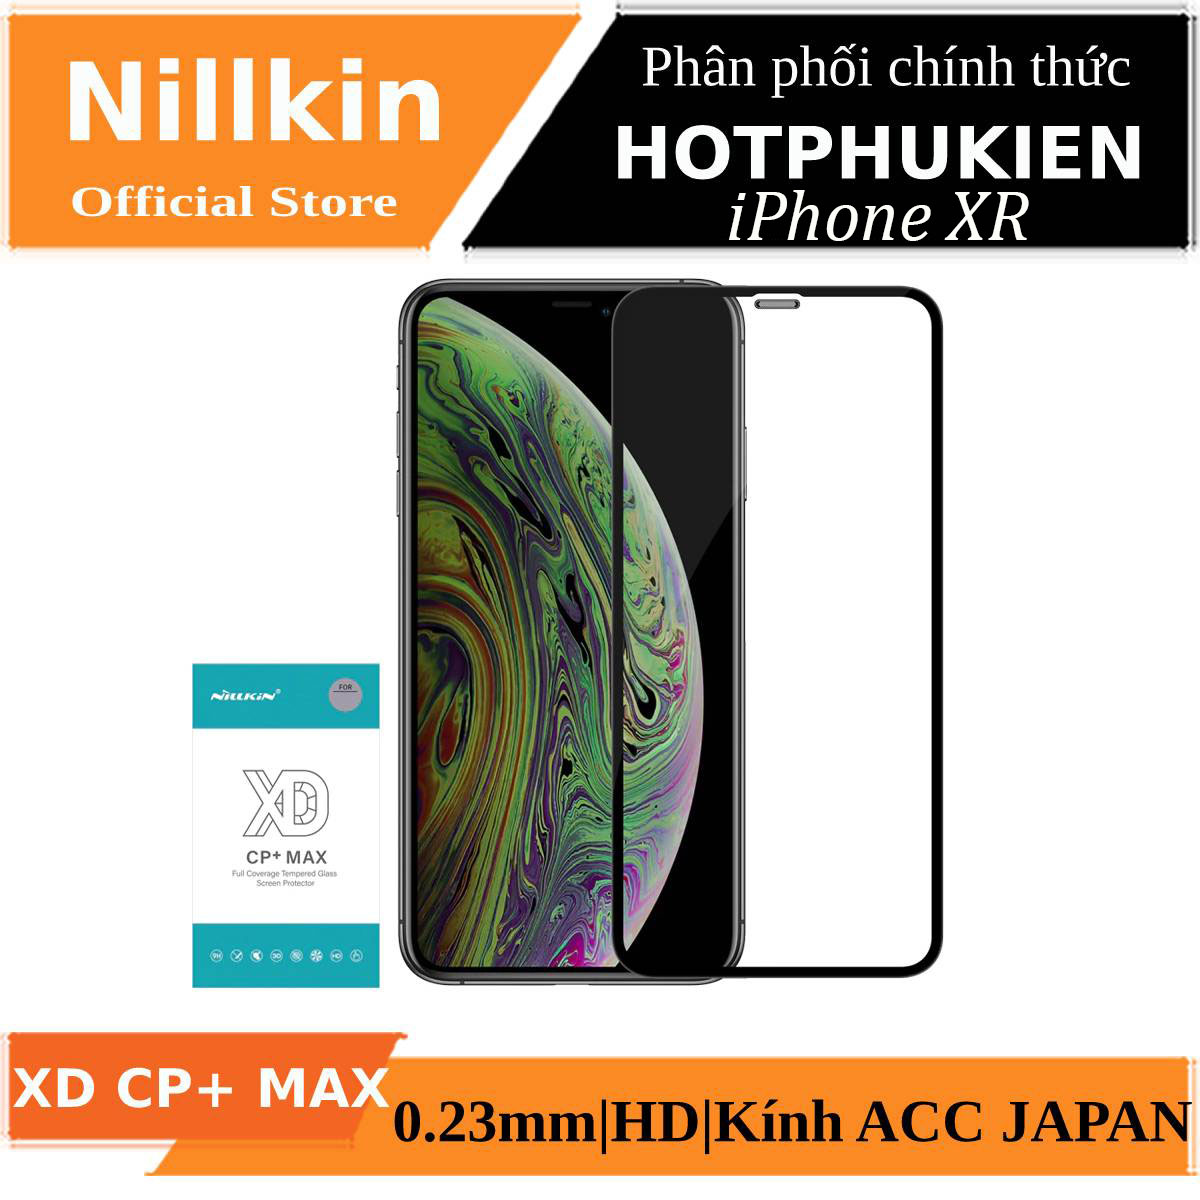 Miếng dán kính cường lực full 3D cho iPhone XR hiệu Nillkin XD CP+ Max